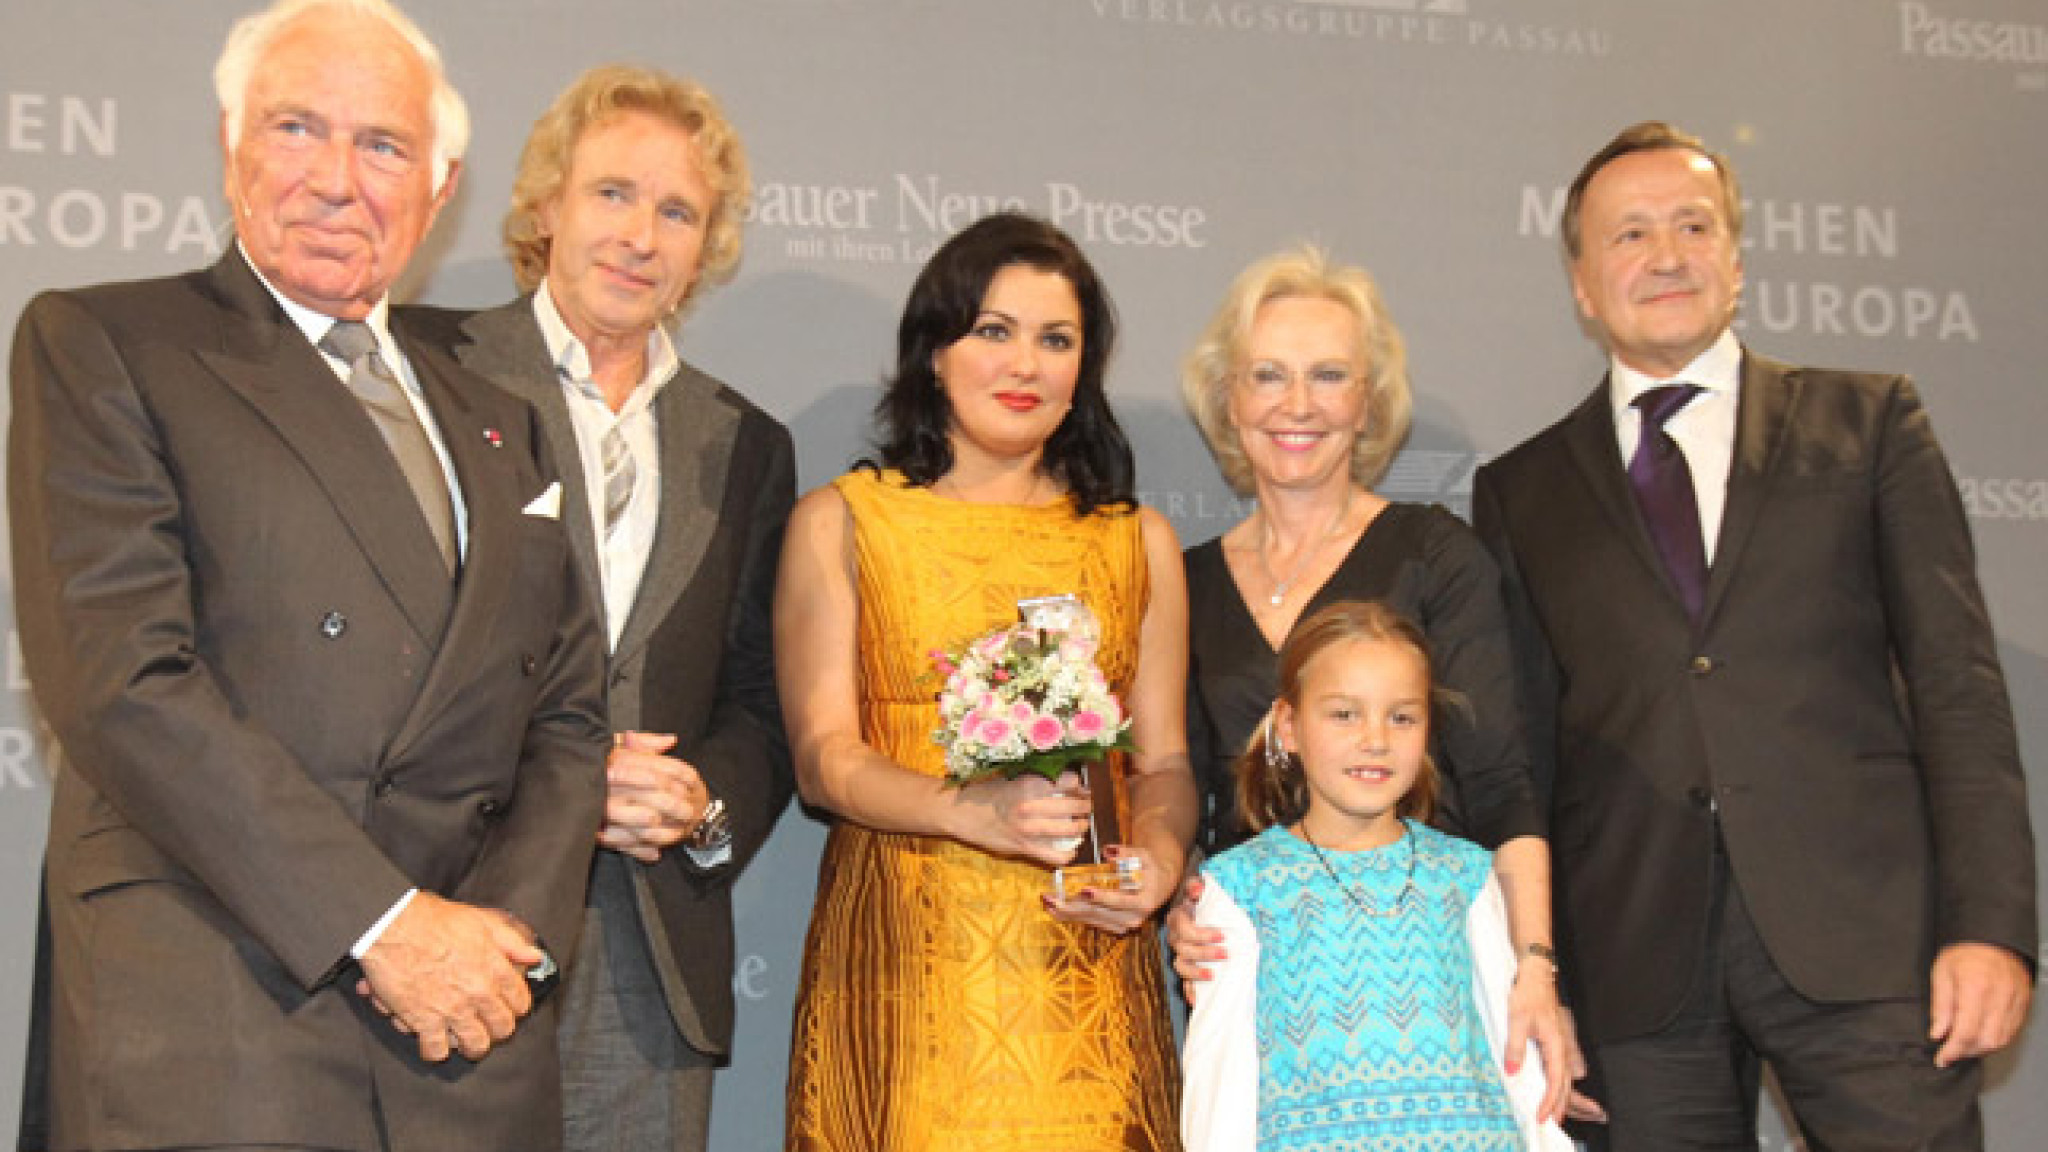 Anna Netrebko bei der Verleihung des "Menschen in Europa" Awards